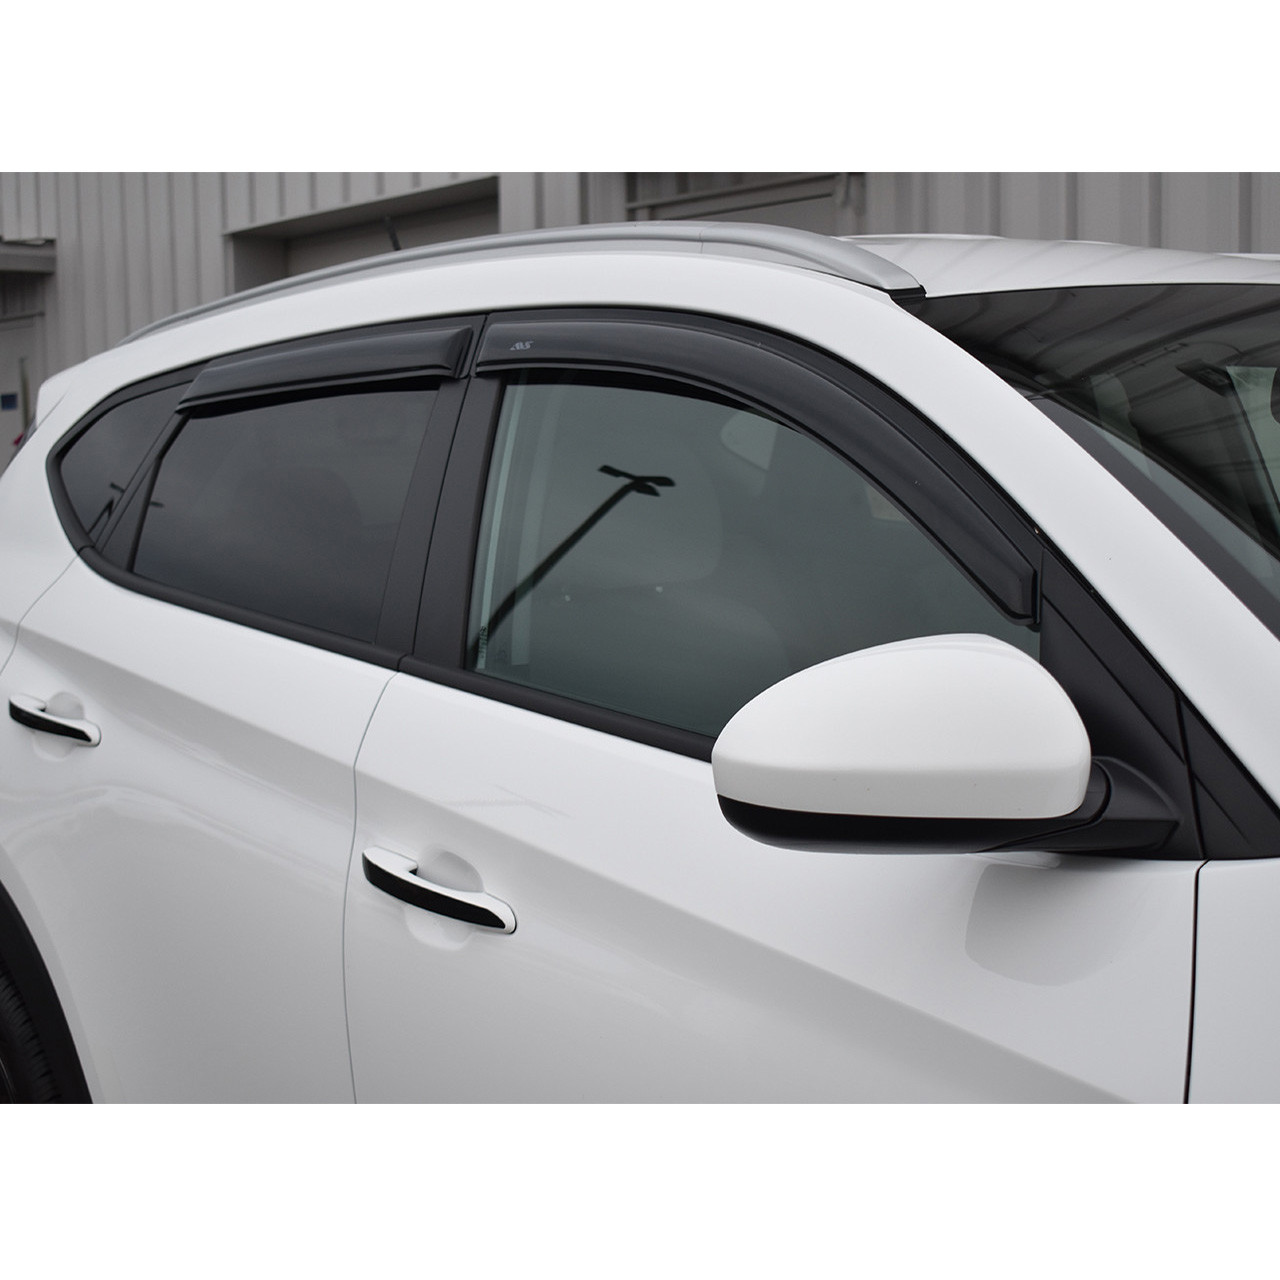 Side Window Deflector For Hyundai Tucson 2015 2016 2017 2018 2019